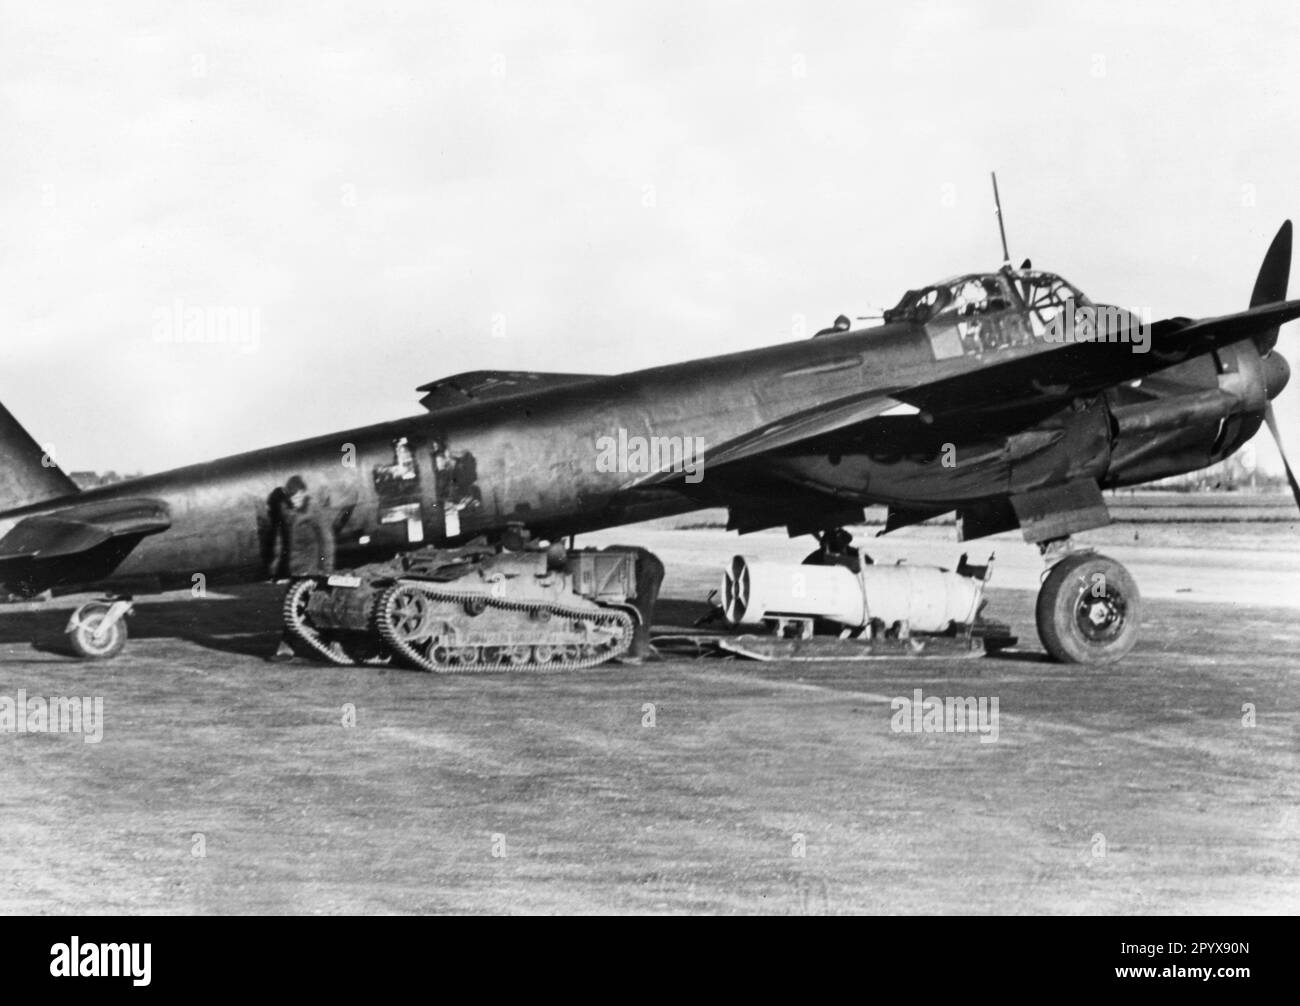 Un avion de chasse allemand Junkers Ju 88 est chargé de bombes pour une mission contre des cibles en Angleterre. Le train de roulement d'un réservoir français sert de tracteur. L'avion est peint avec une peinture de camouflage sombre, la croix de faisceau est également en partie de couleur foncée. Photo : Rempel. [traduction automatique] Banque D'Images